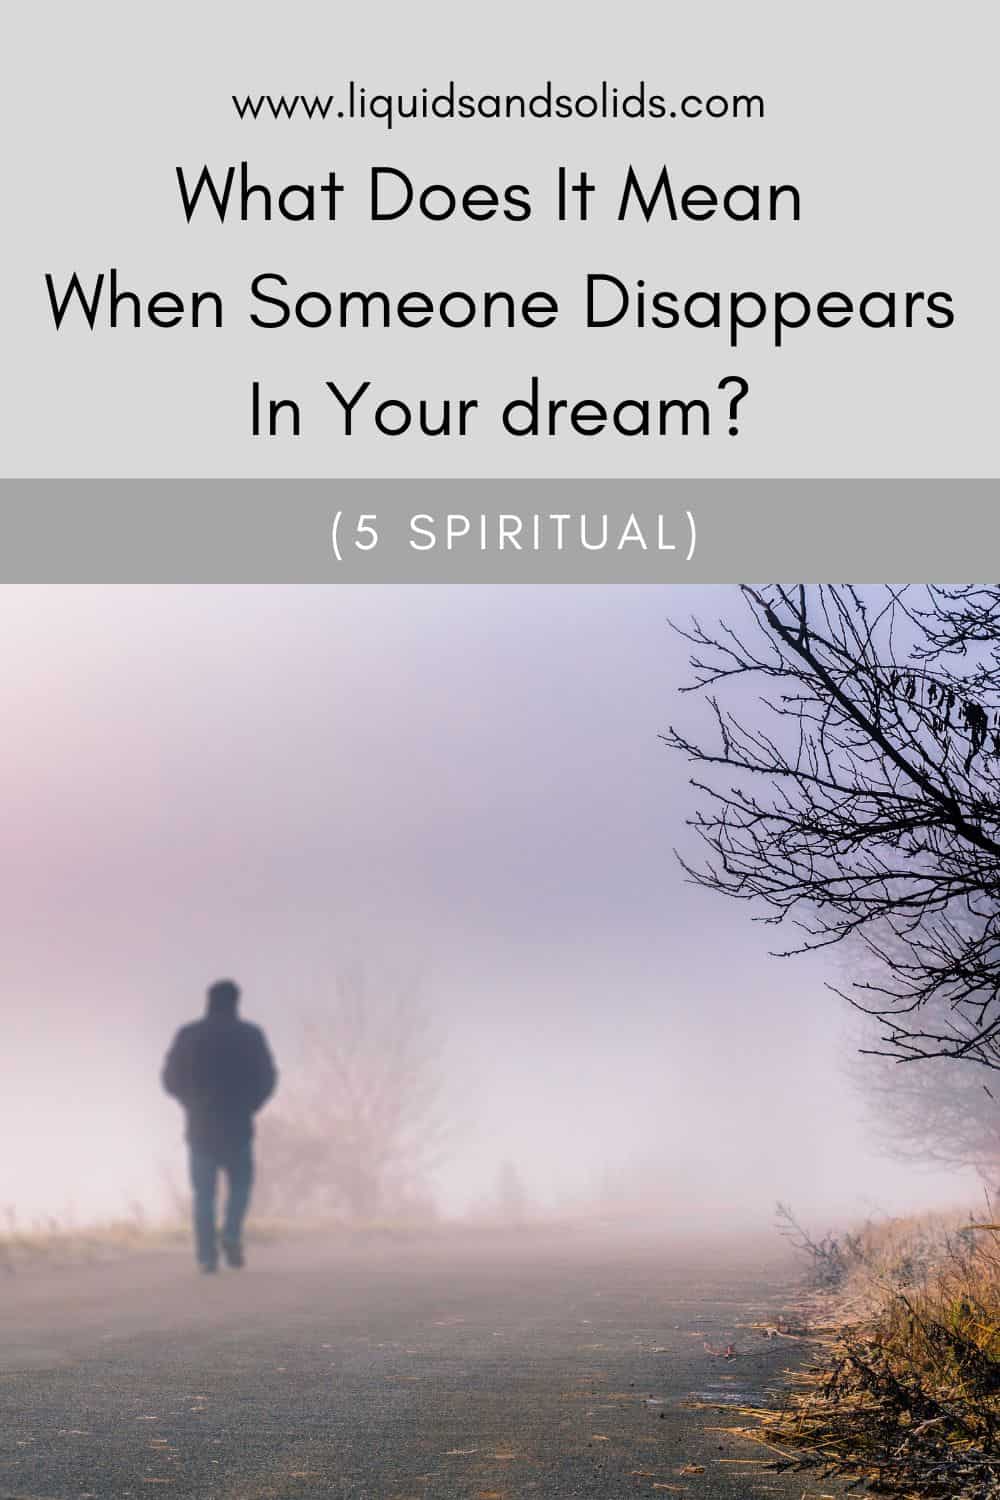  ماذا يعني اختفاء شخص ما في حلمك؟ (5 معاني روحية)